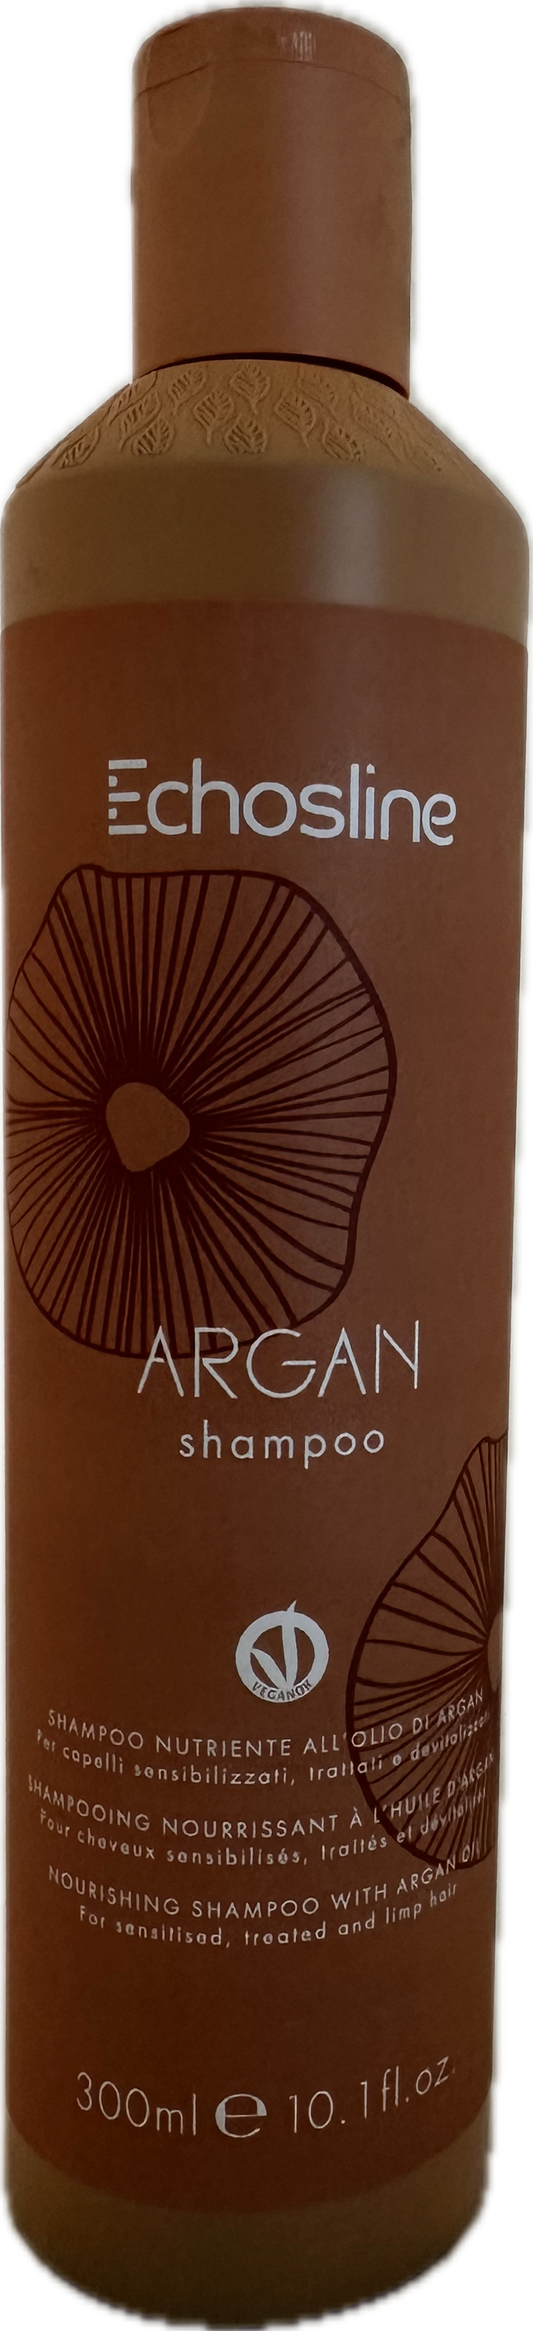 Echos Line Seliar - Argan shampoo - Shampoo nutriente all'olio di argan 300 ml